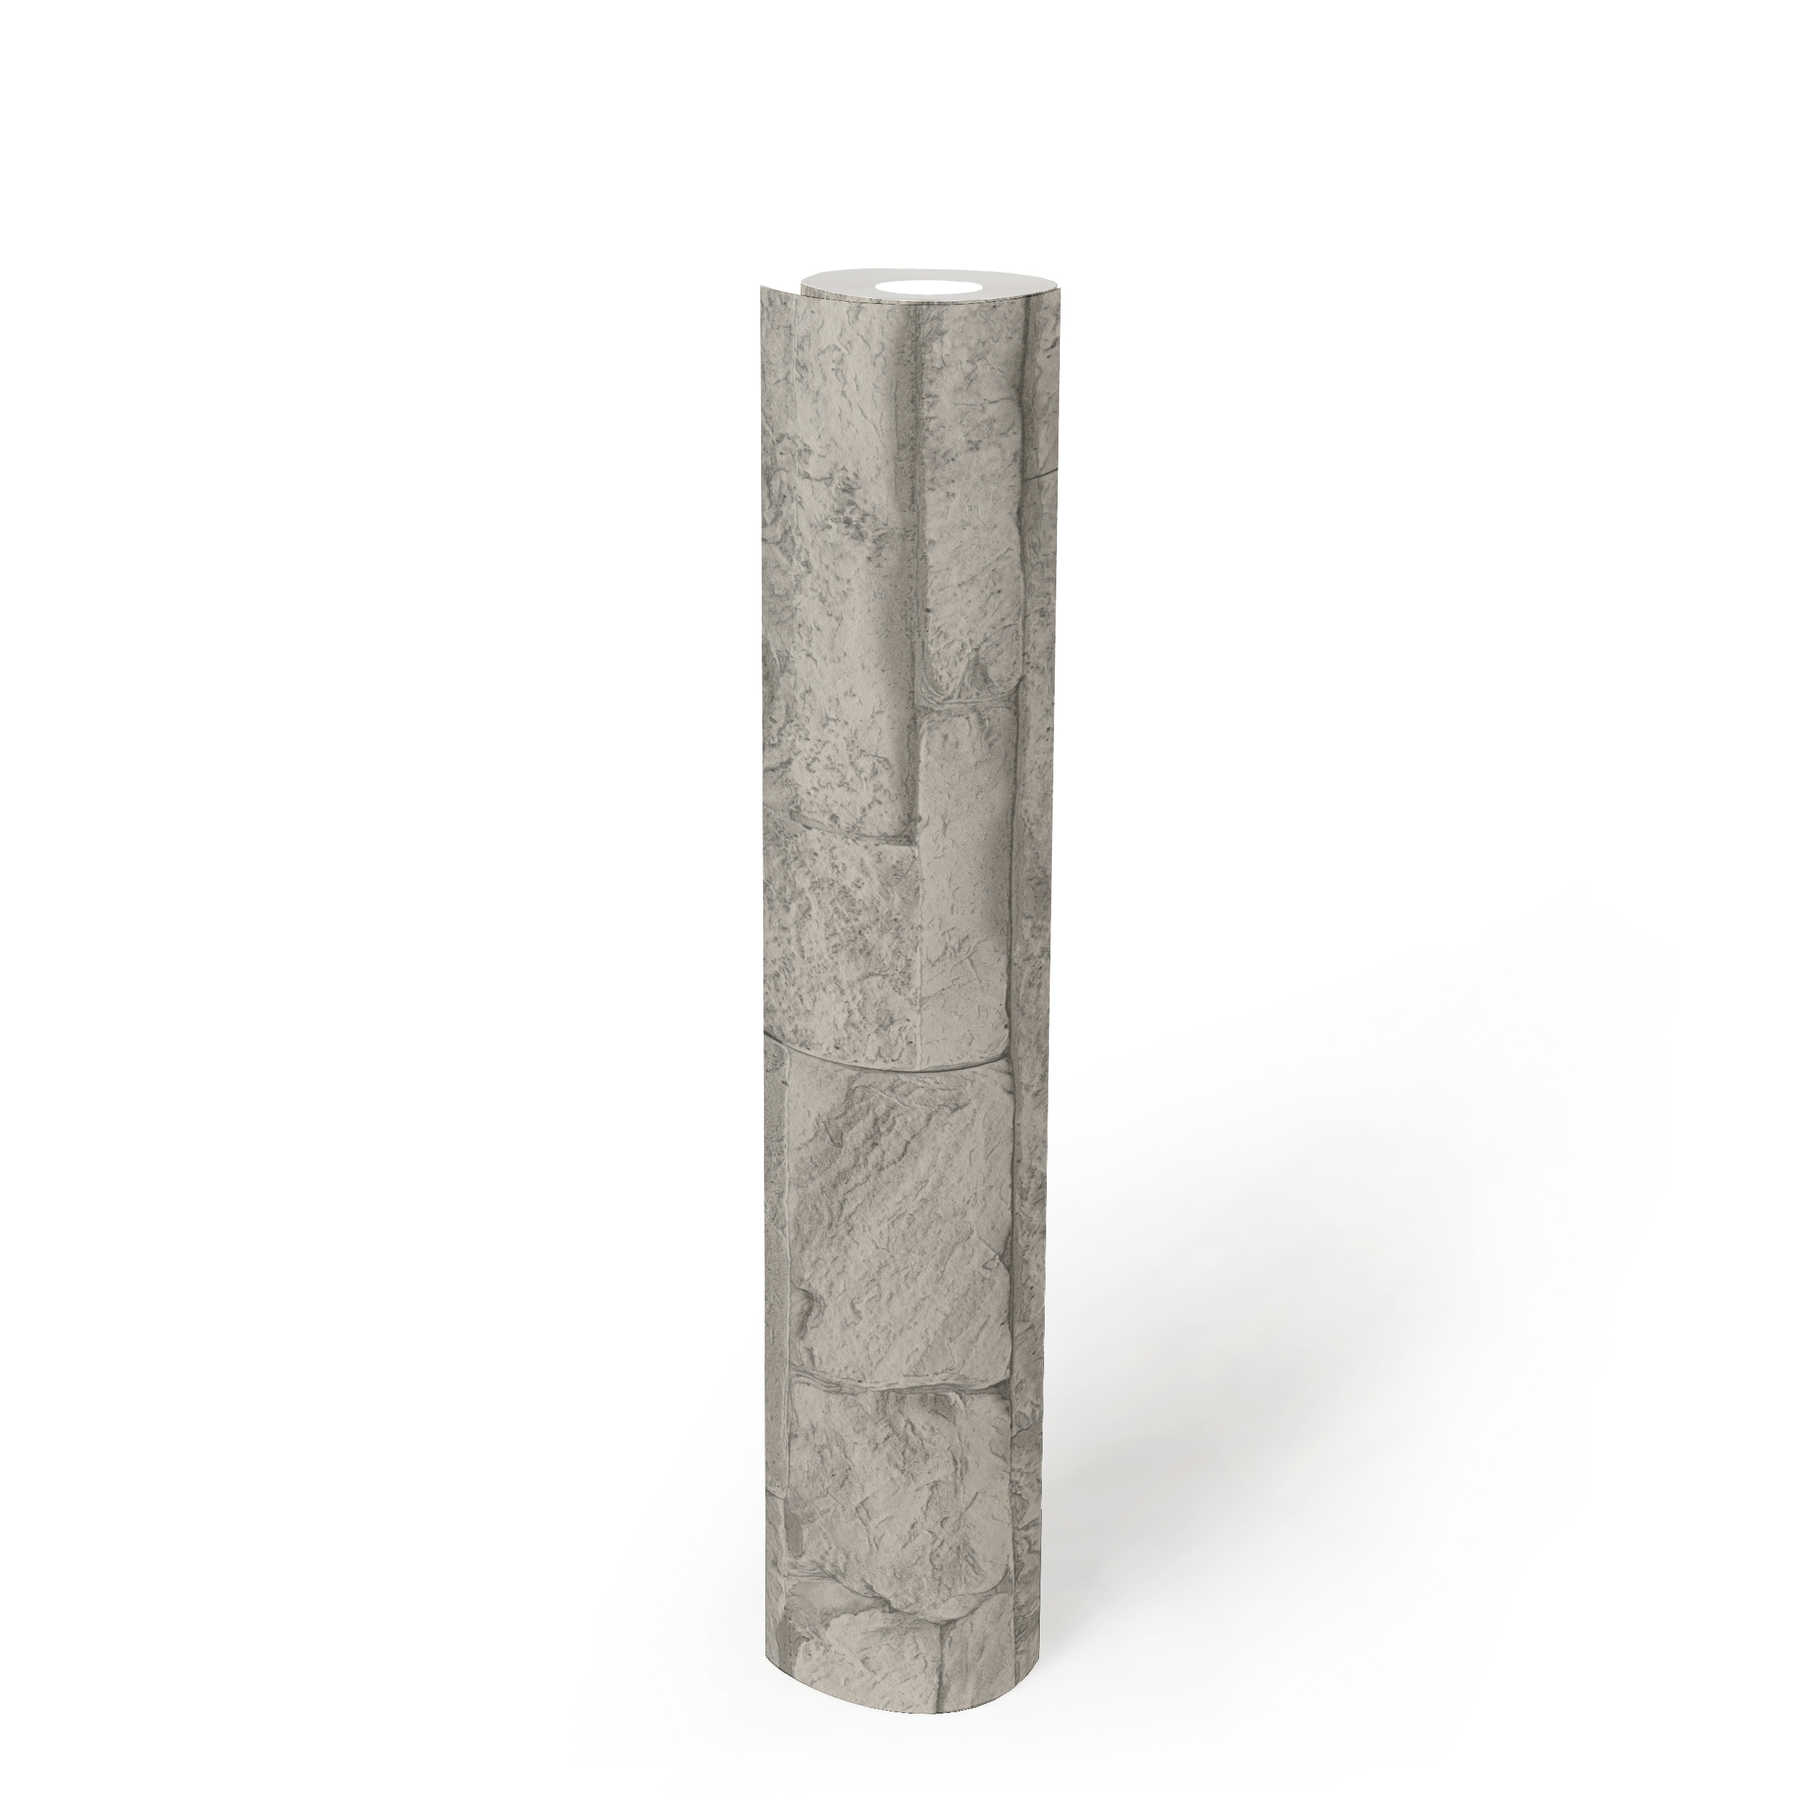             Tapete Natursteinoptik detailliert & realistisch – Grau, Weiß
        